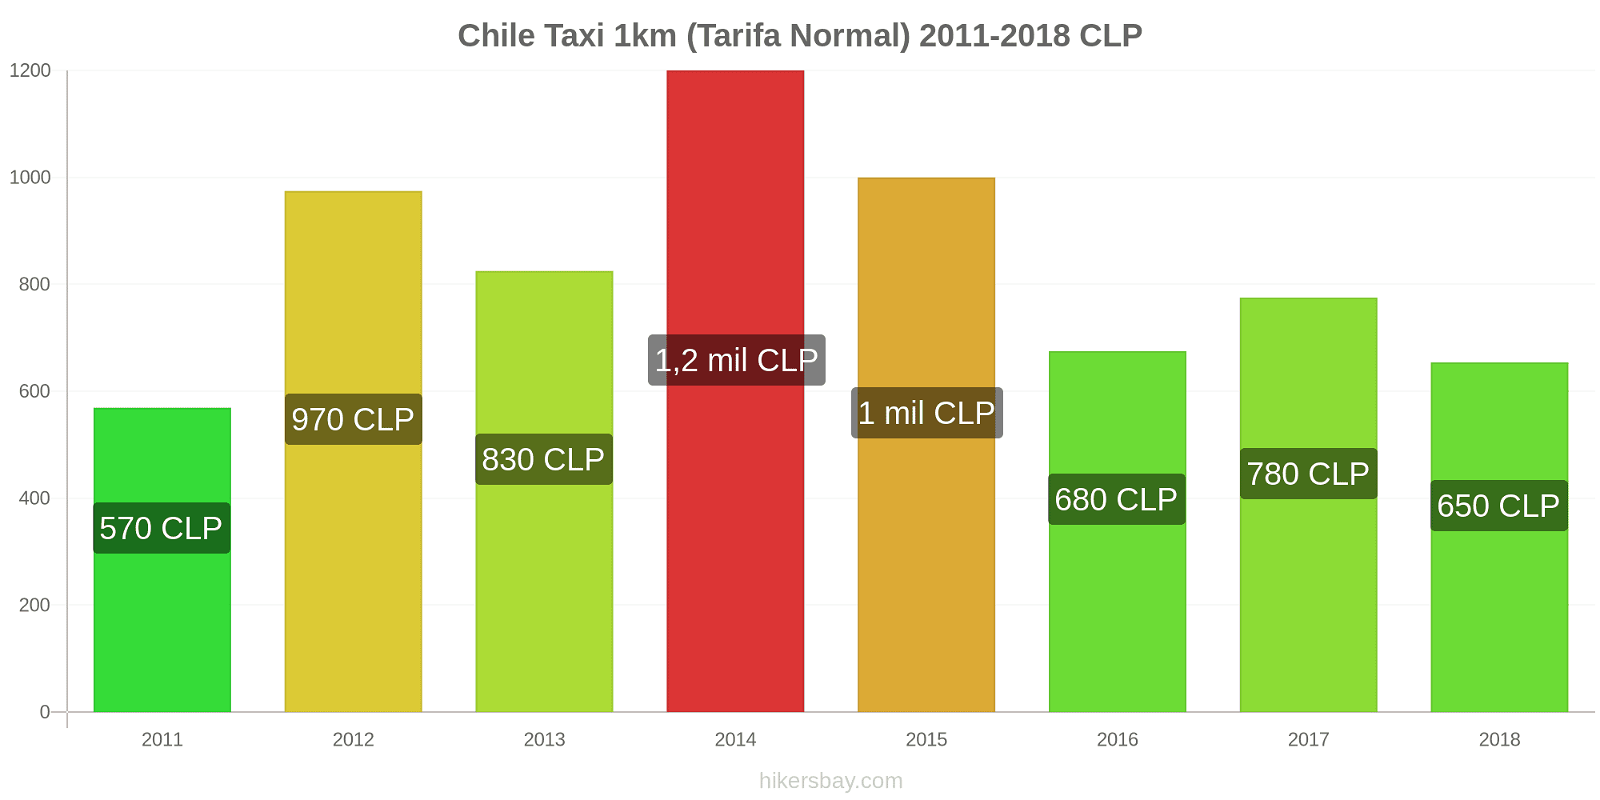 Chile cambios de precios Taxi 1km (tarifa normal) hikersbay.com